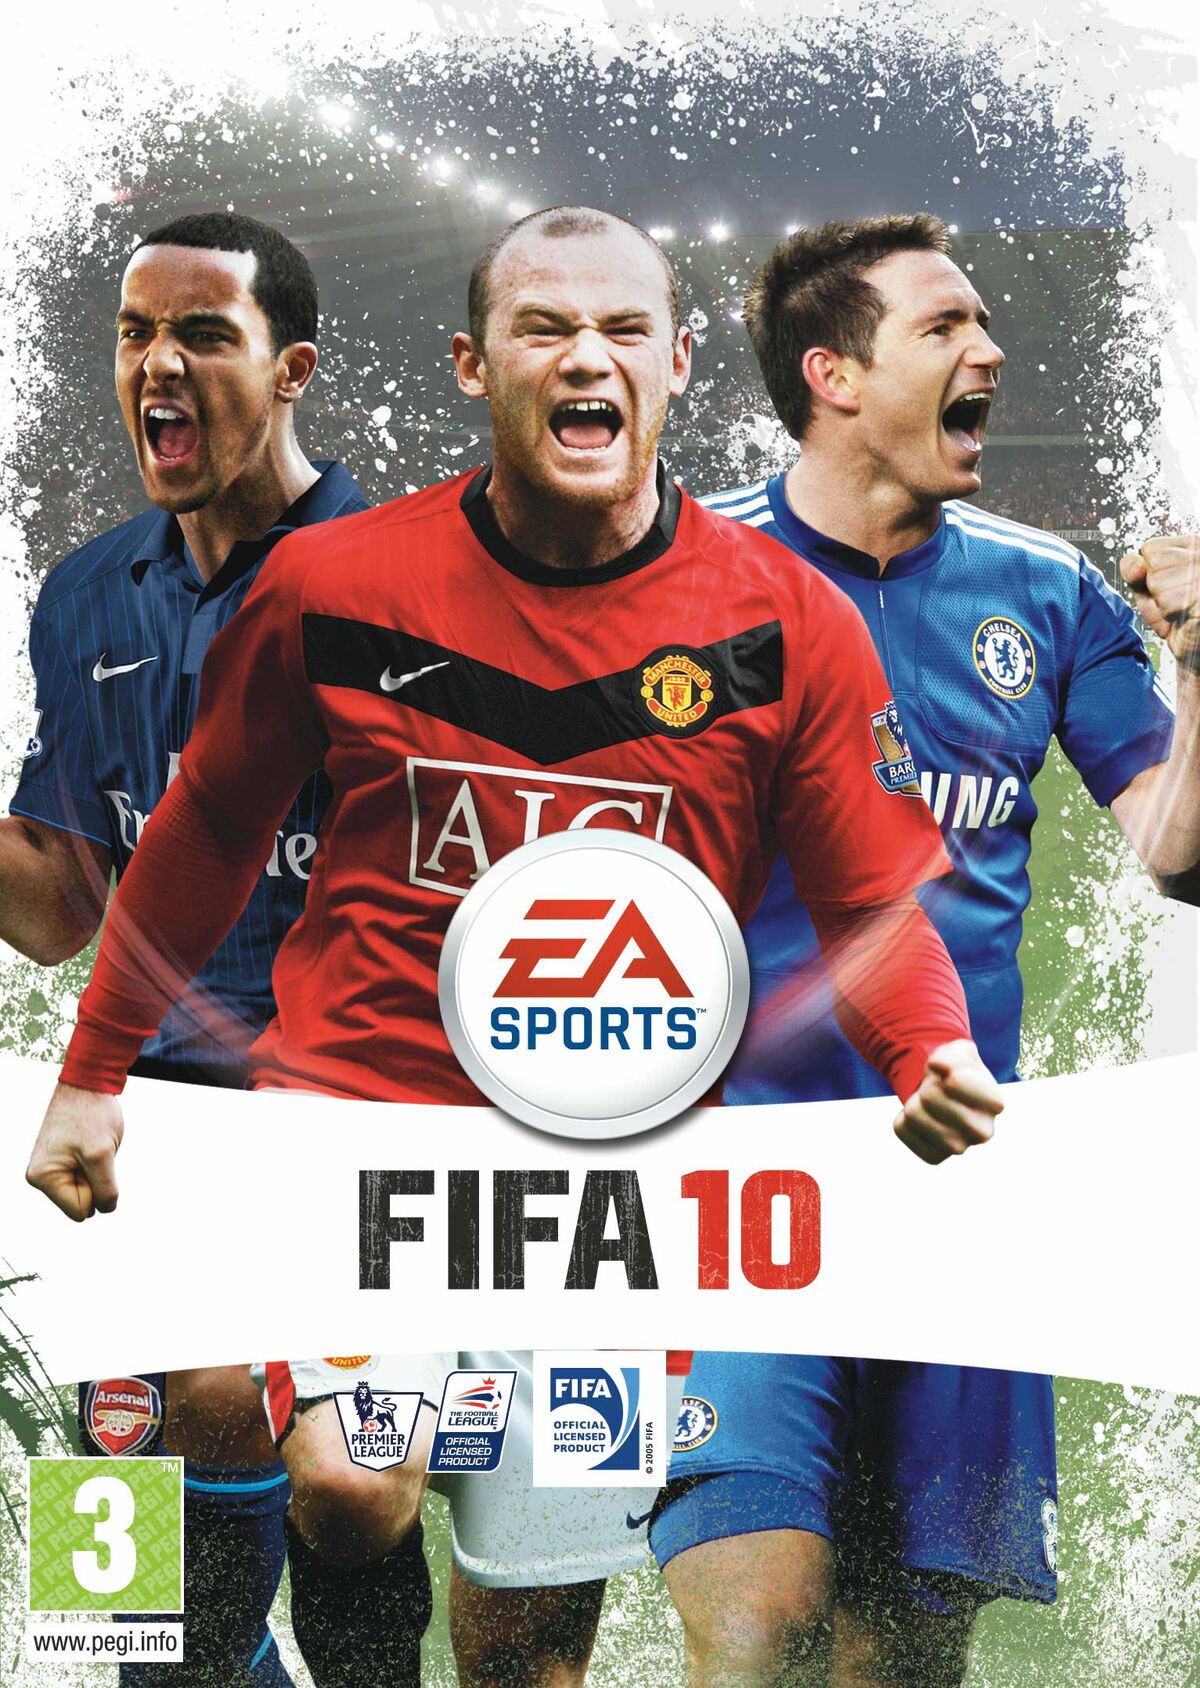 FIFA 10, FIFA Football Gaming wiki